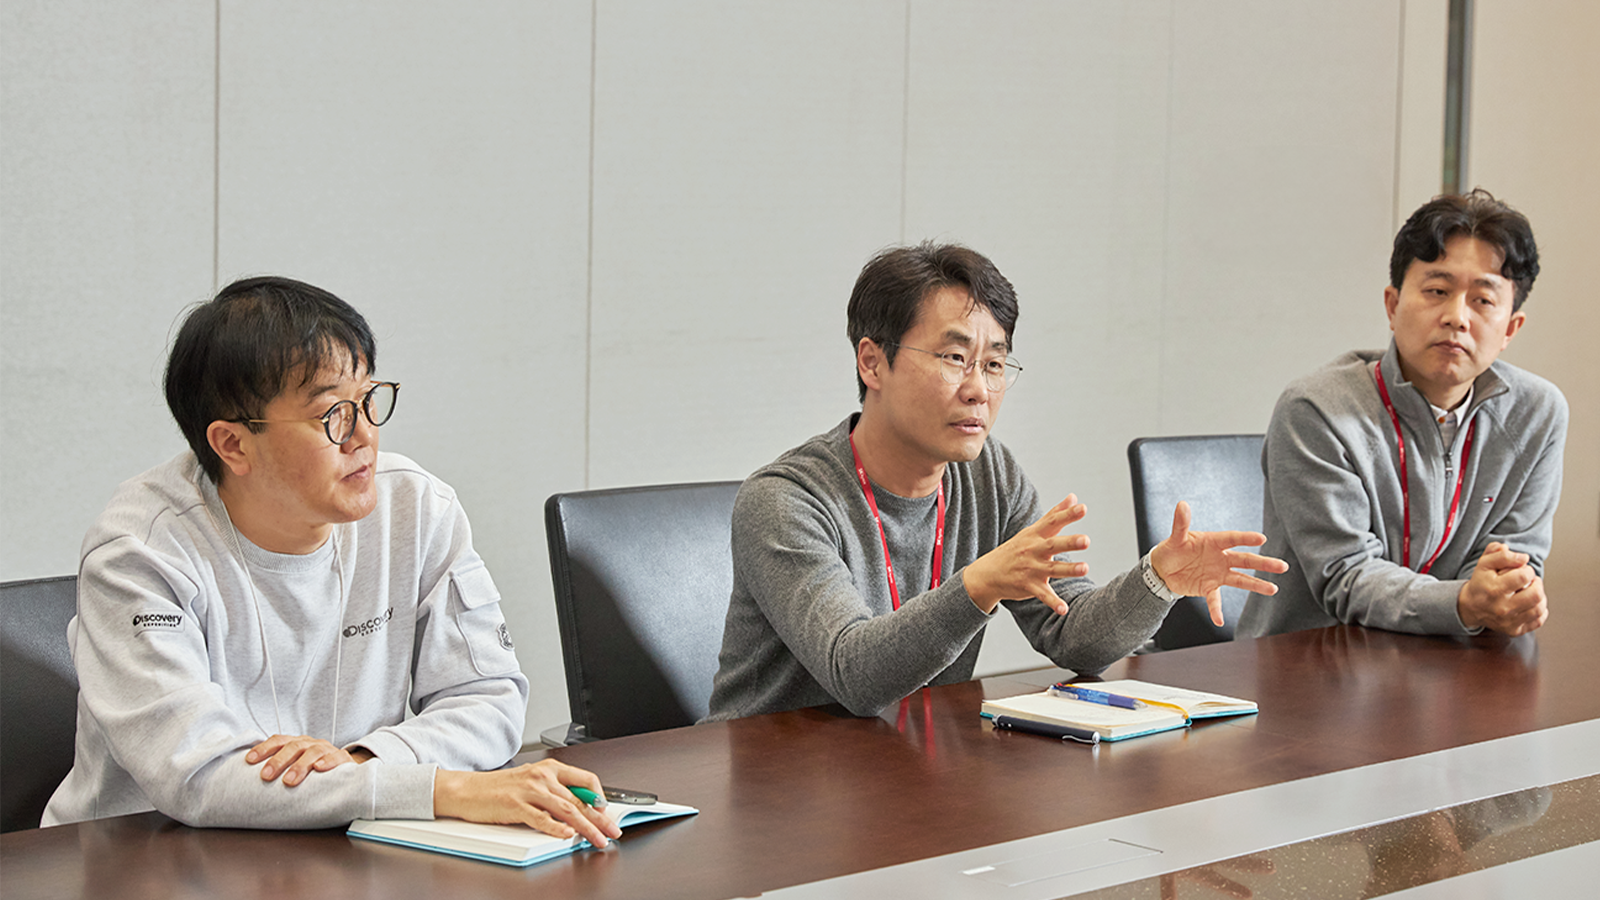 소재 재활용 분과 송환욱 TL, 송부섭 팀장, 정용준 TL(왼쪽부터)이 소재 재활용 기술과 관련해 회의하고 있다.